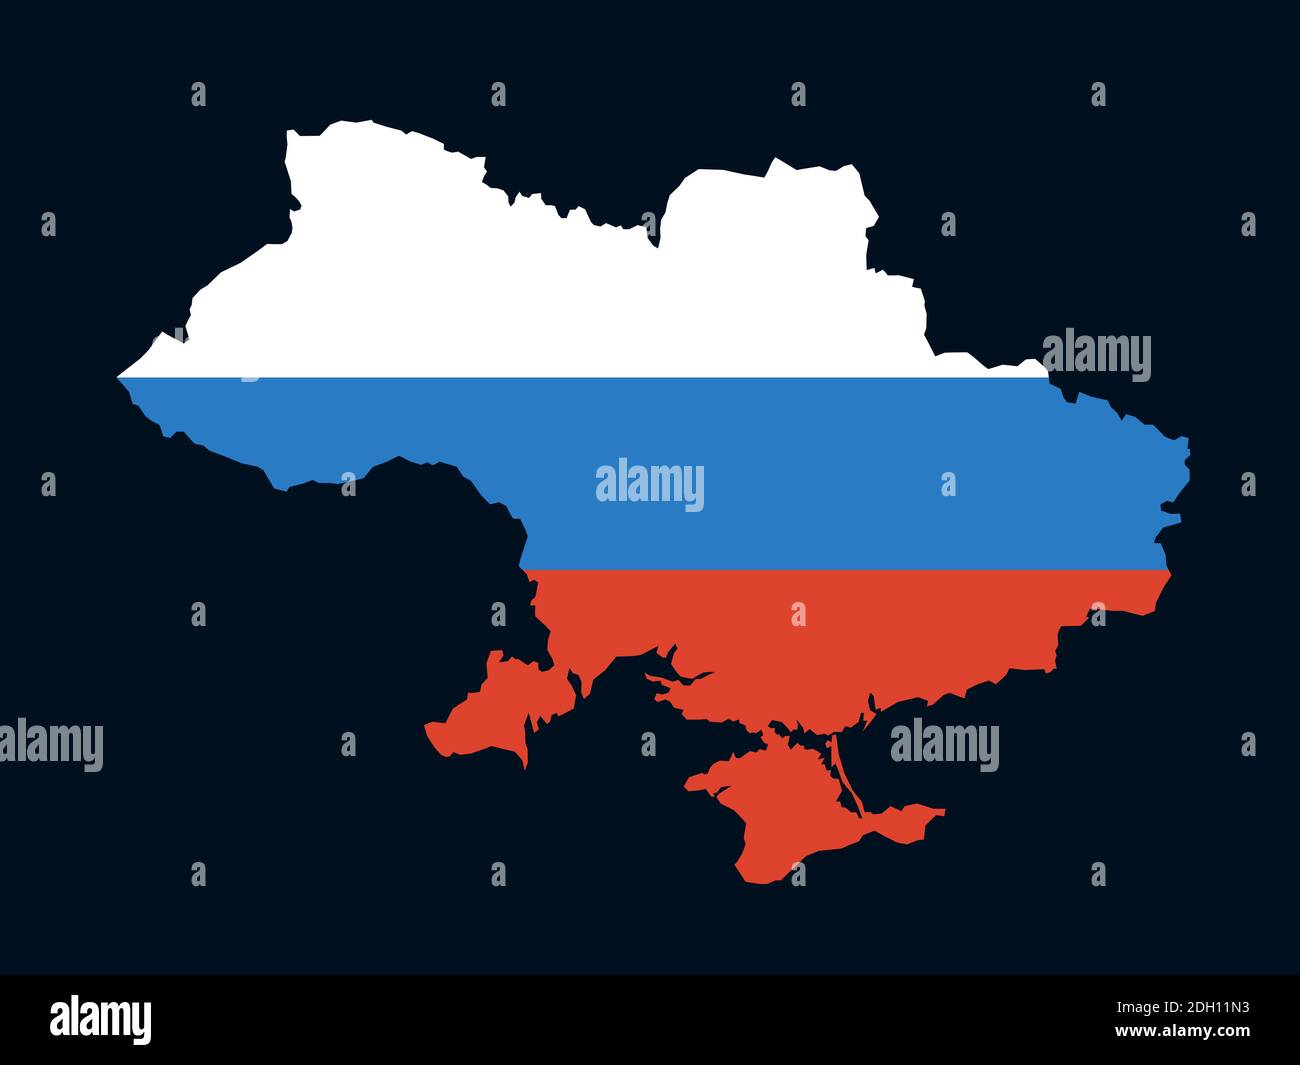 Mappa dell'Ucraina a colori della Russia come metafora della sfera di interesse russa. Influenza politica, coinvolgimento, intervento, annessione e occupazione Foto Stock